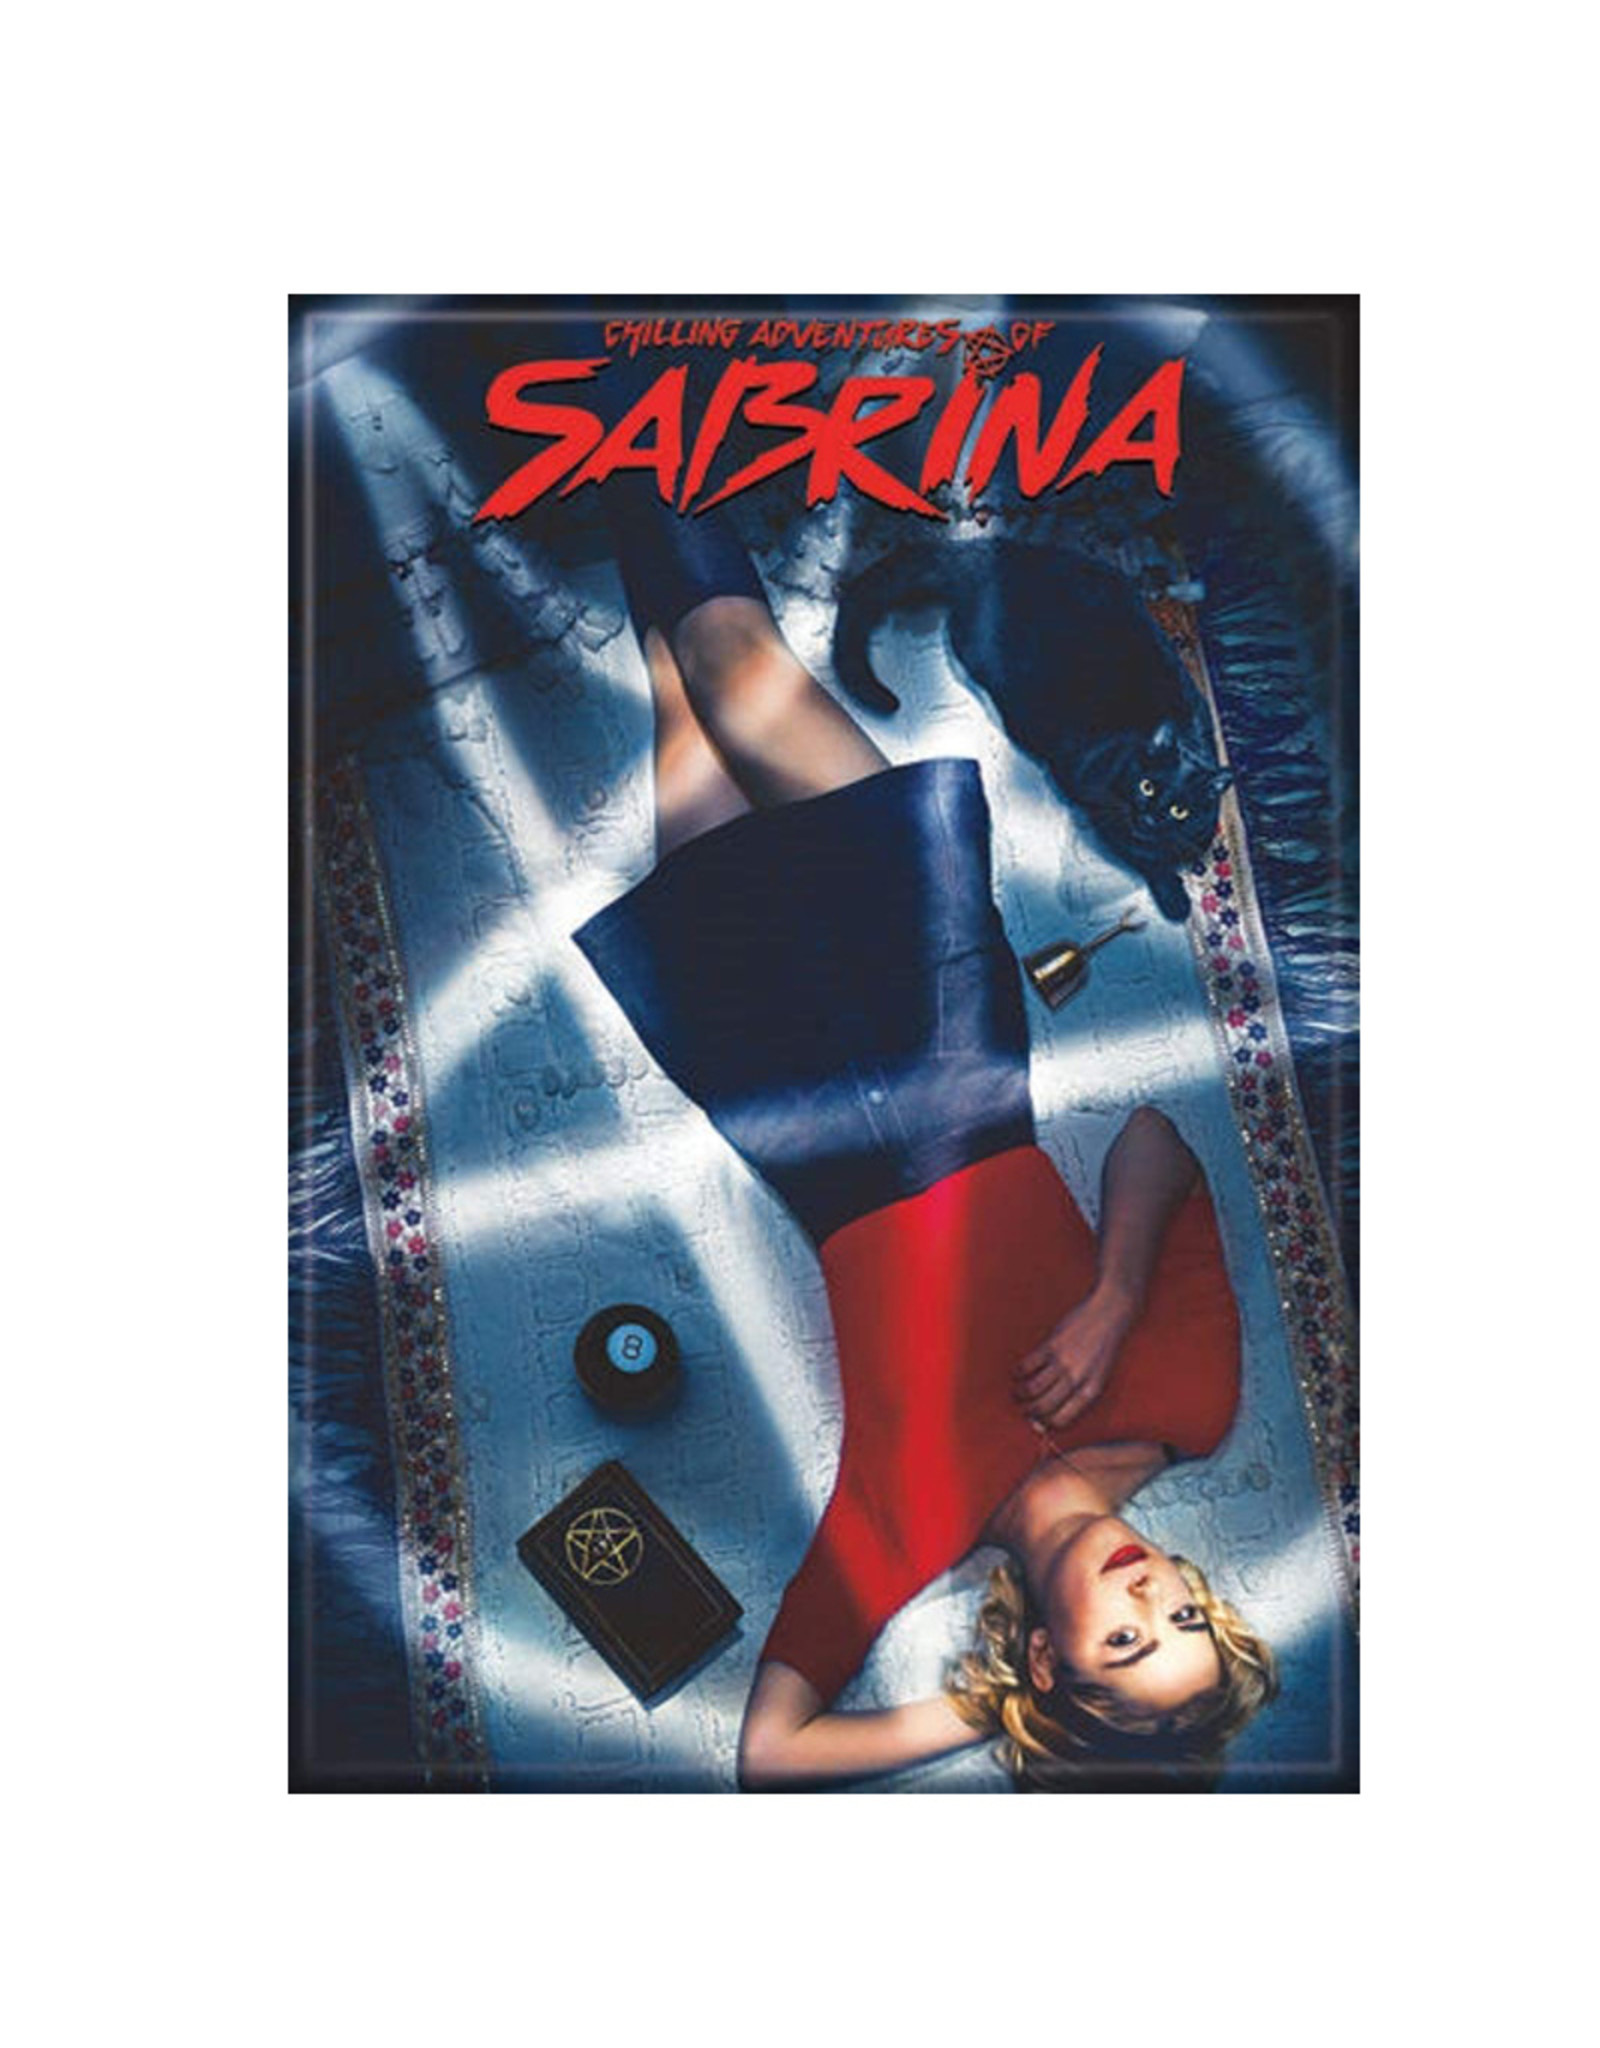 Ata-Boy Sabrina Poster Magnet